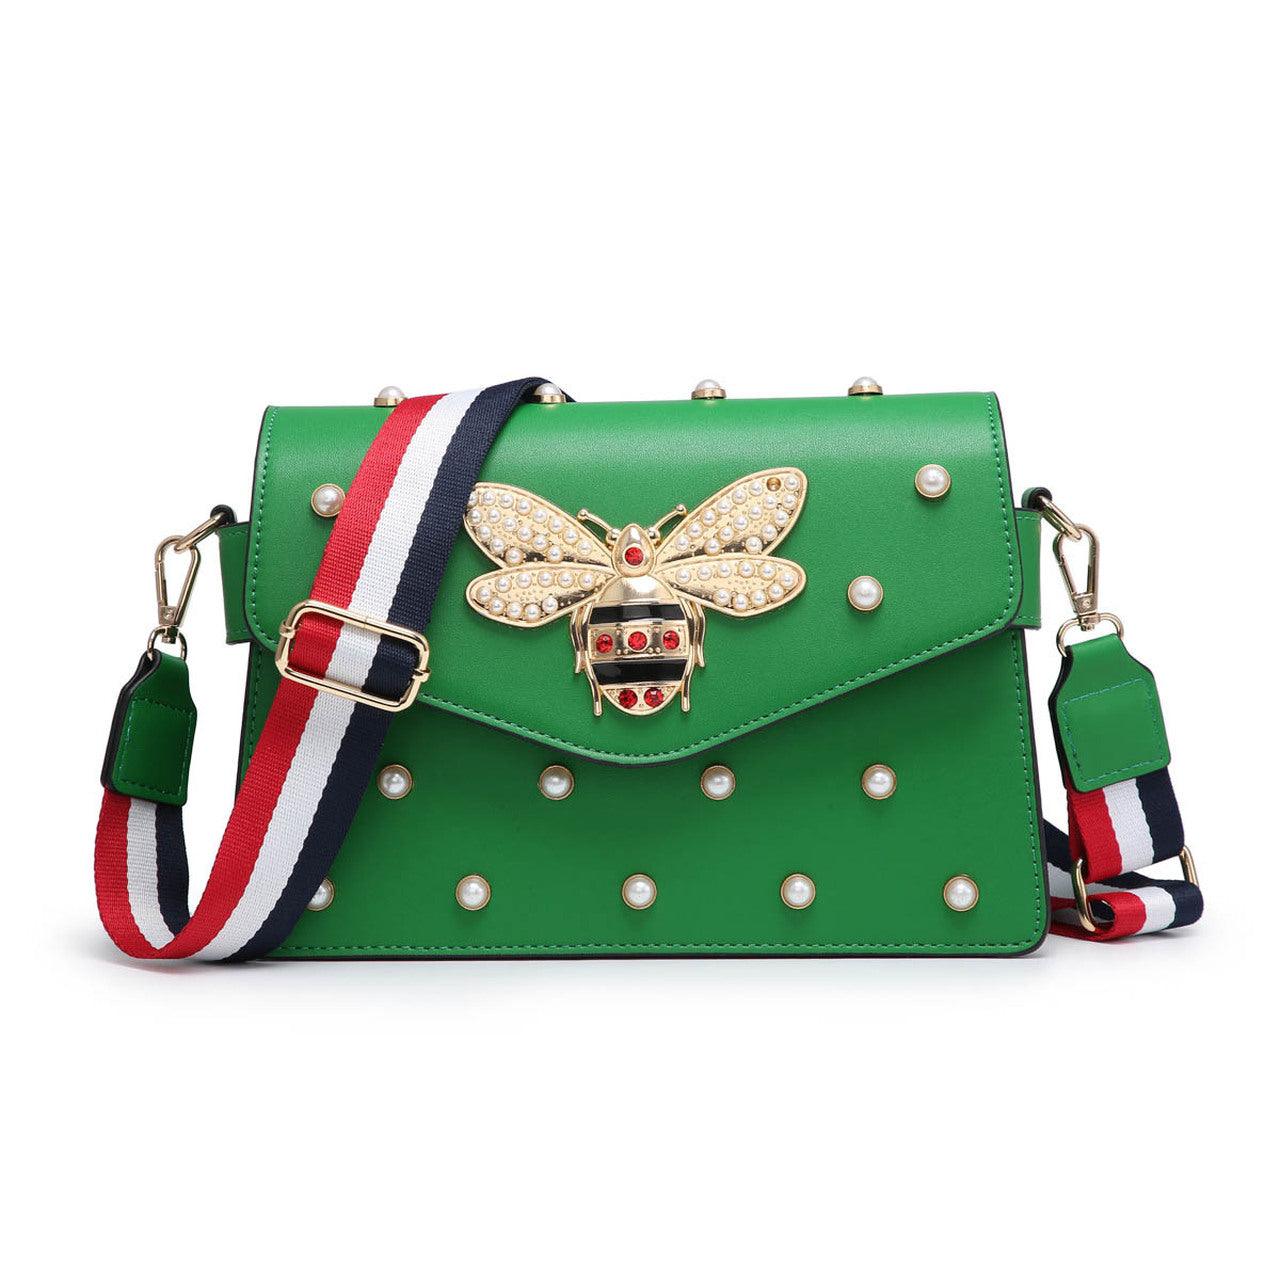 "Hot Queen" Fashion Handbag - Mint Leafe Boutique 